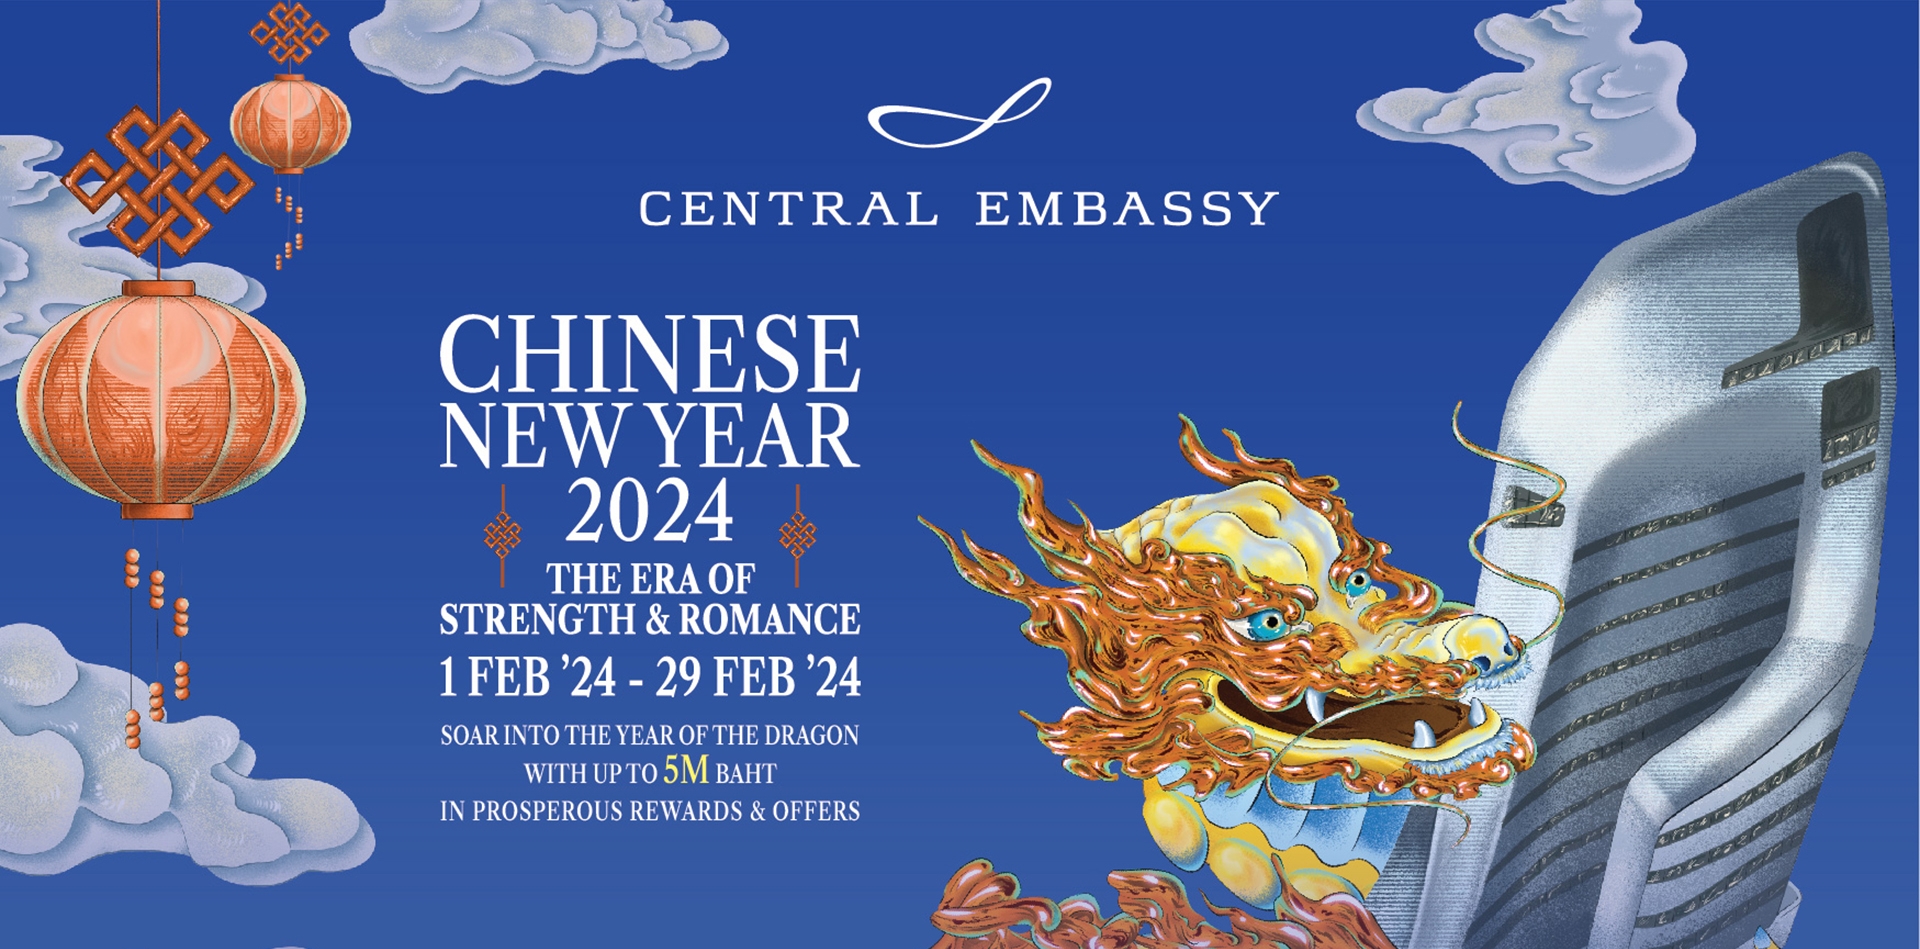 เซ็นทรัล เอ็มบาสซี ชวนฉลองอภิมหาตรุษจีน ในแคมเปญ 'Central Embassy Chinese New Year 2024'